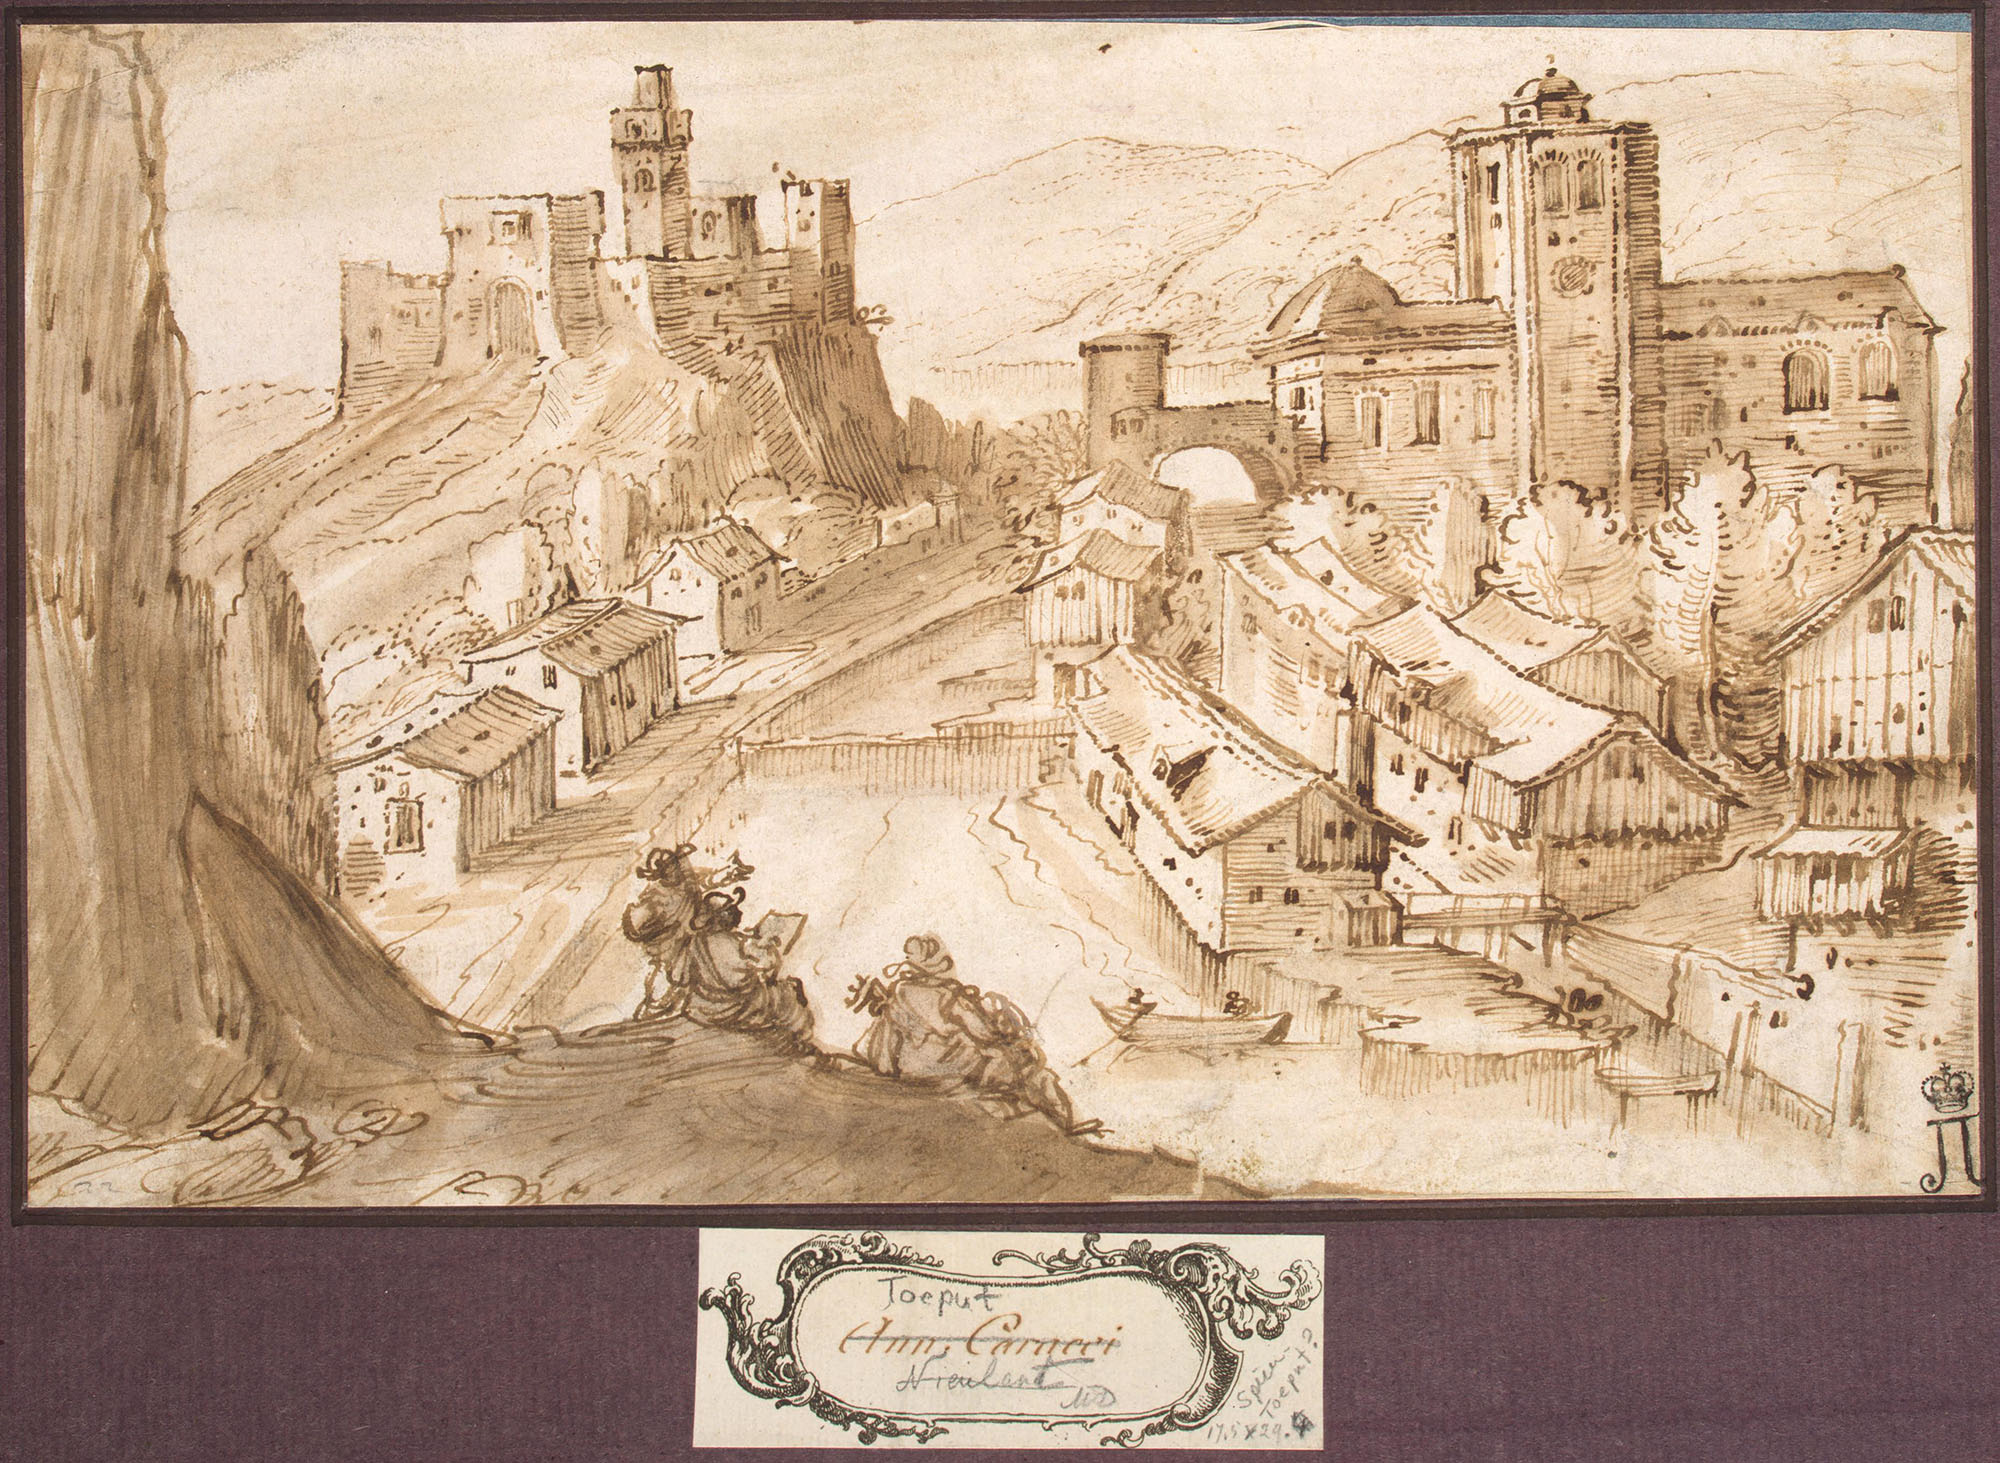 Лодевик Поццосеррато. "Итальянский город на берегу реки". Около 1580-1590. Эрмитаж, Санкт-Петербург.